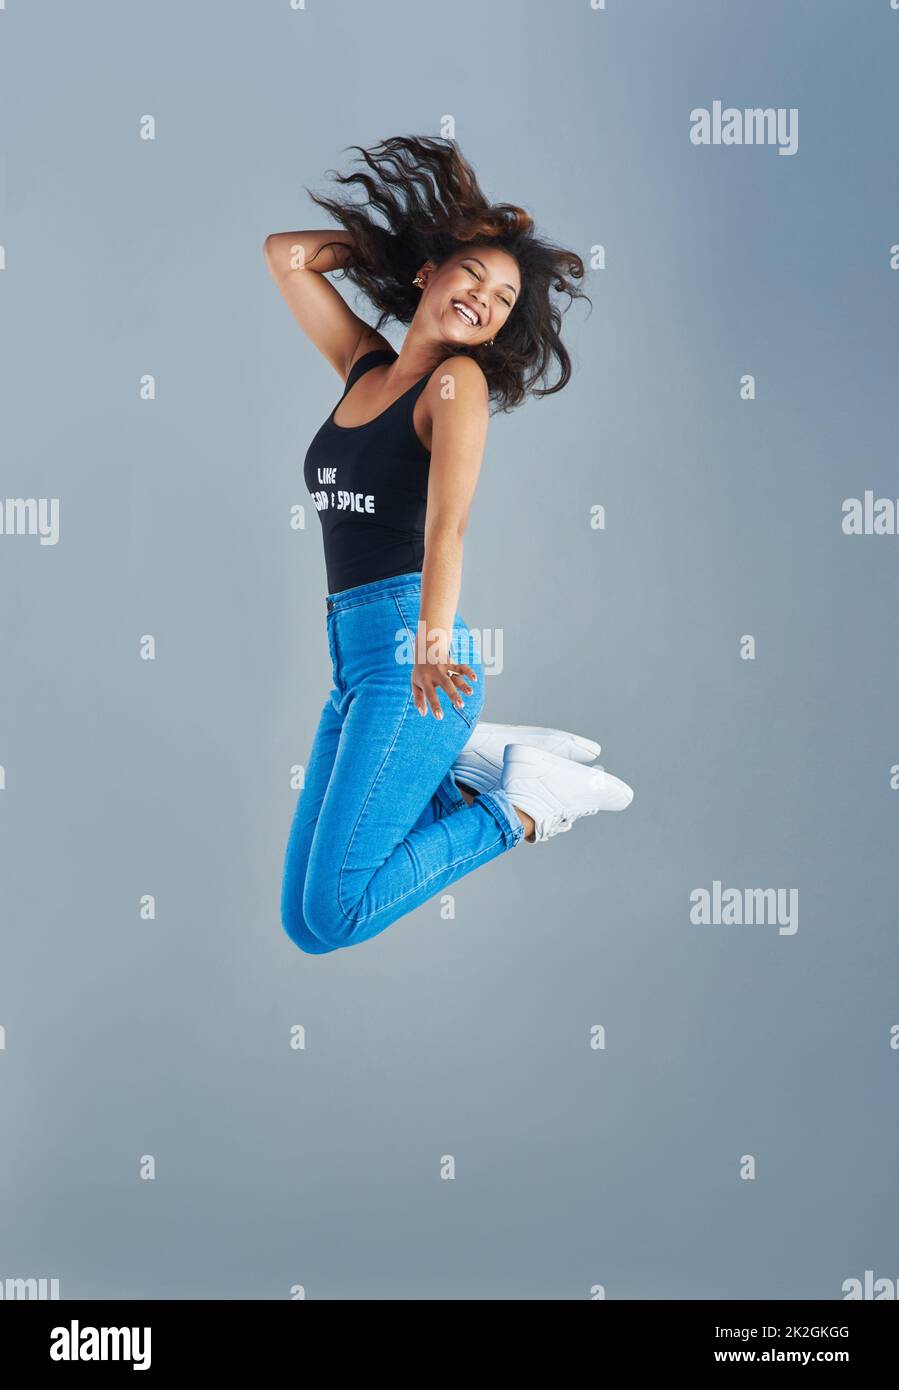 Springen vor Freude. Aufnahme einer attraktiven jungen Frau, die vor grauem Hintergrund posiert. Stockfoto